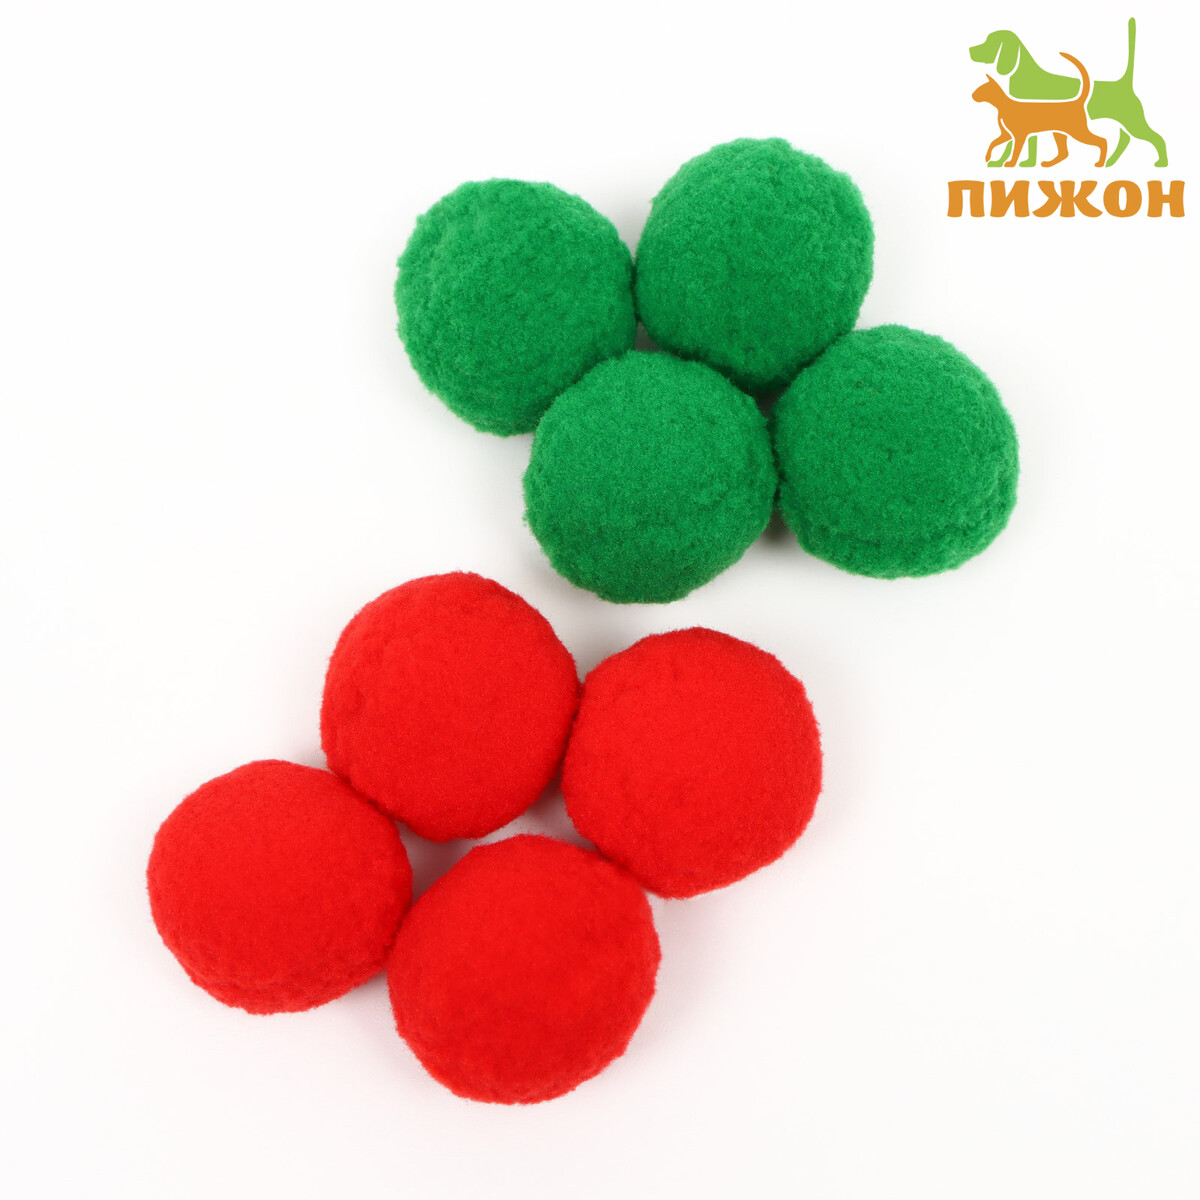 Набор плюшевых шариков для кошек, 8 шт, зеленый/красный набор шариков